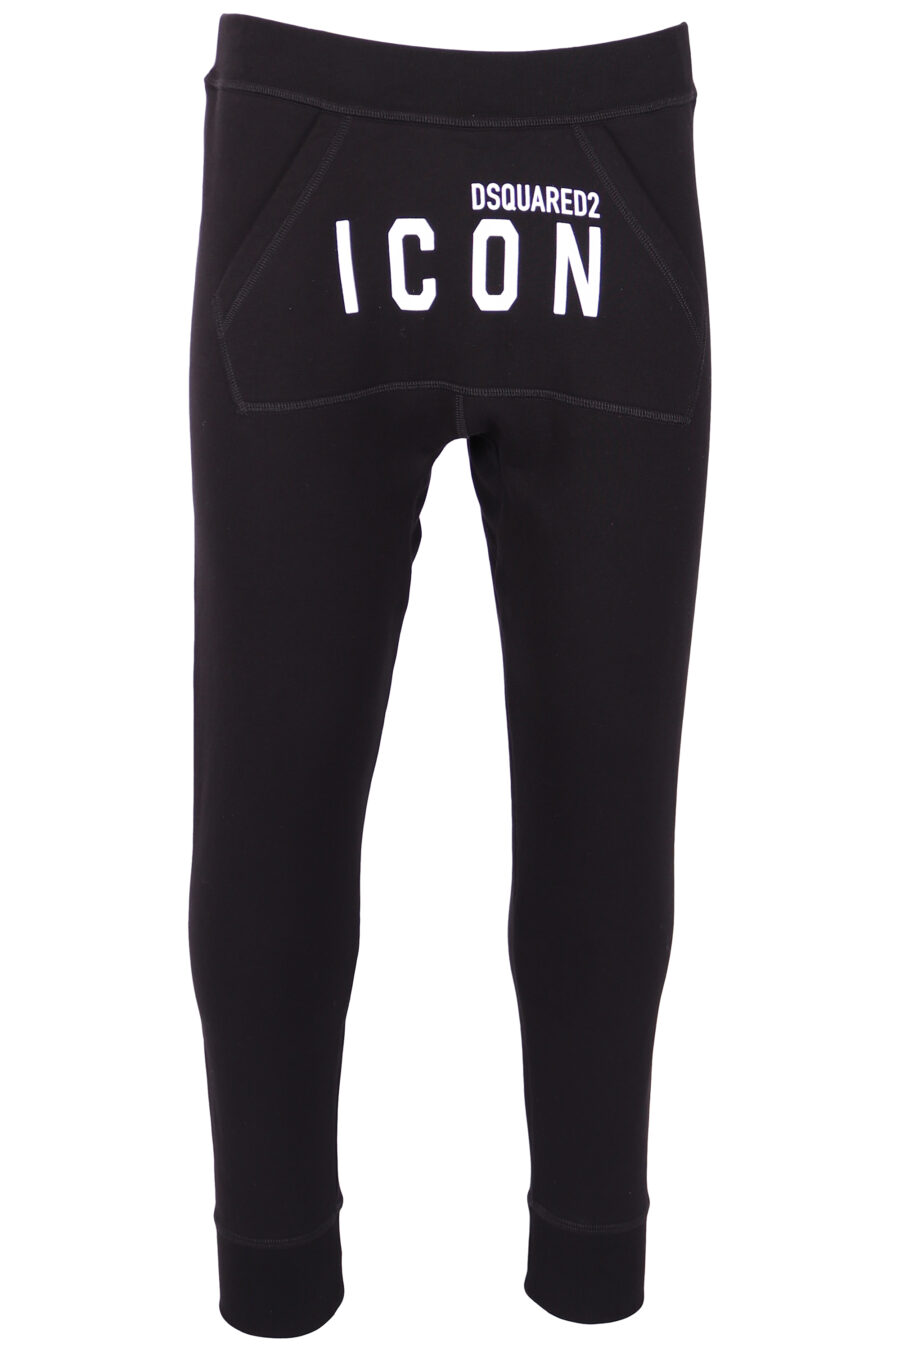 Pantalón de chándal negro con doble logo "icon" frontal - IMG 4297